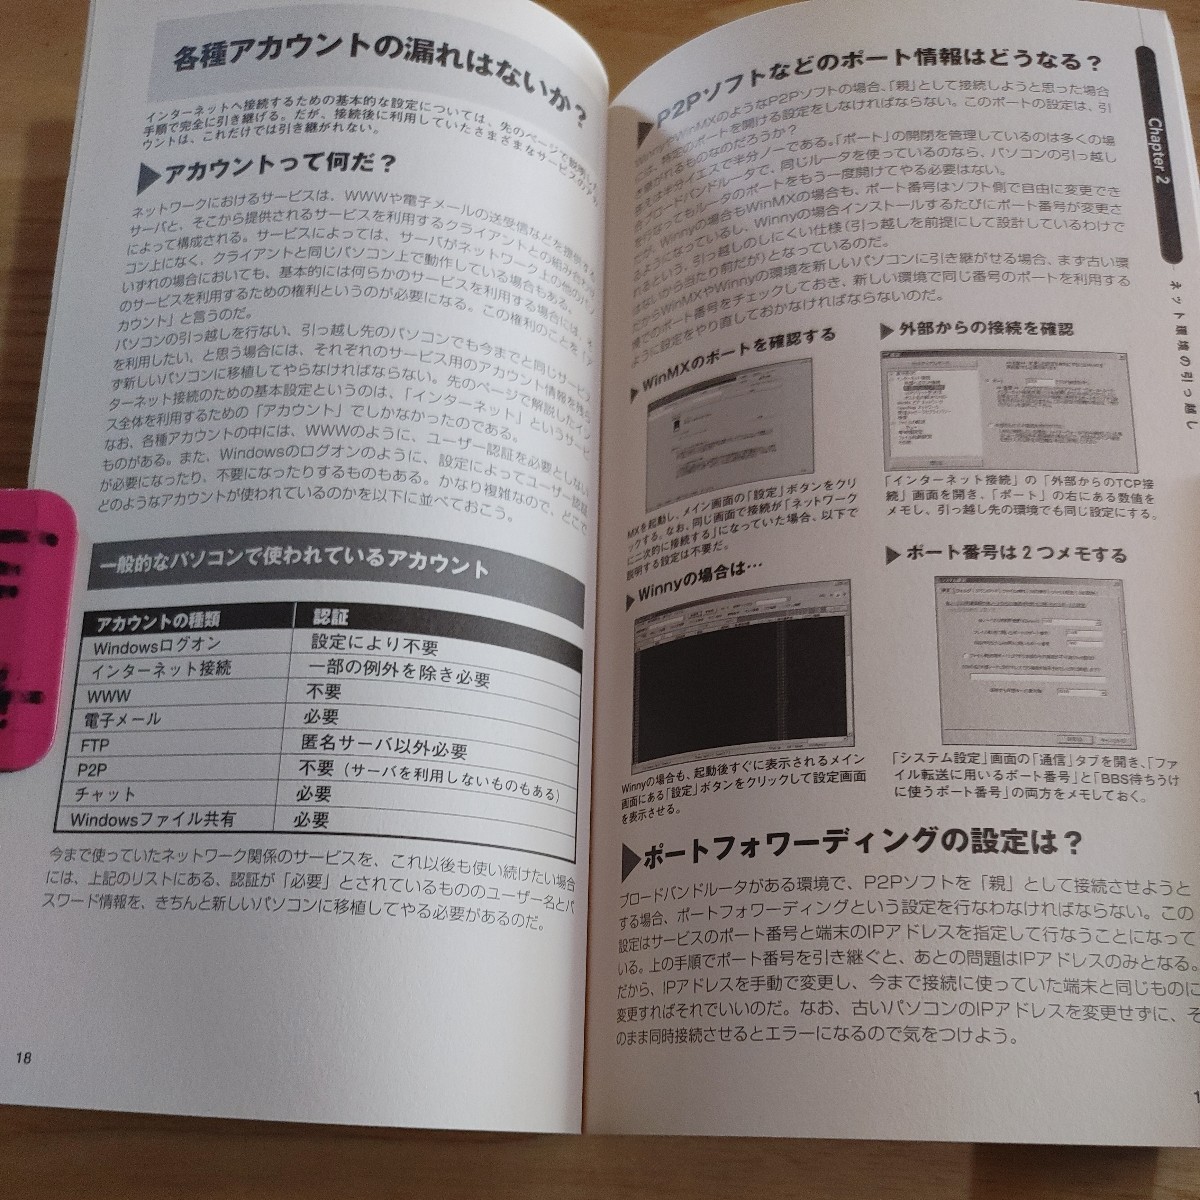 [ старая книга .] ежемесячный PC GIGA данные. . перемещение Perfect manual 2004 год 9 месяц номер специальный дополнение 